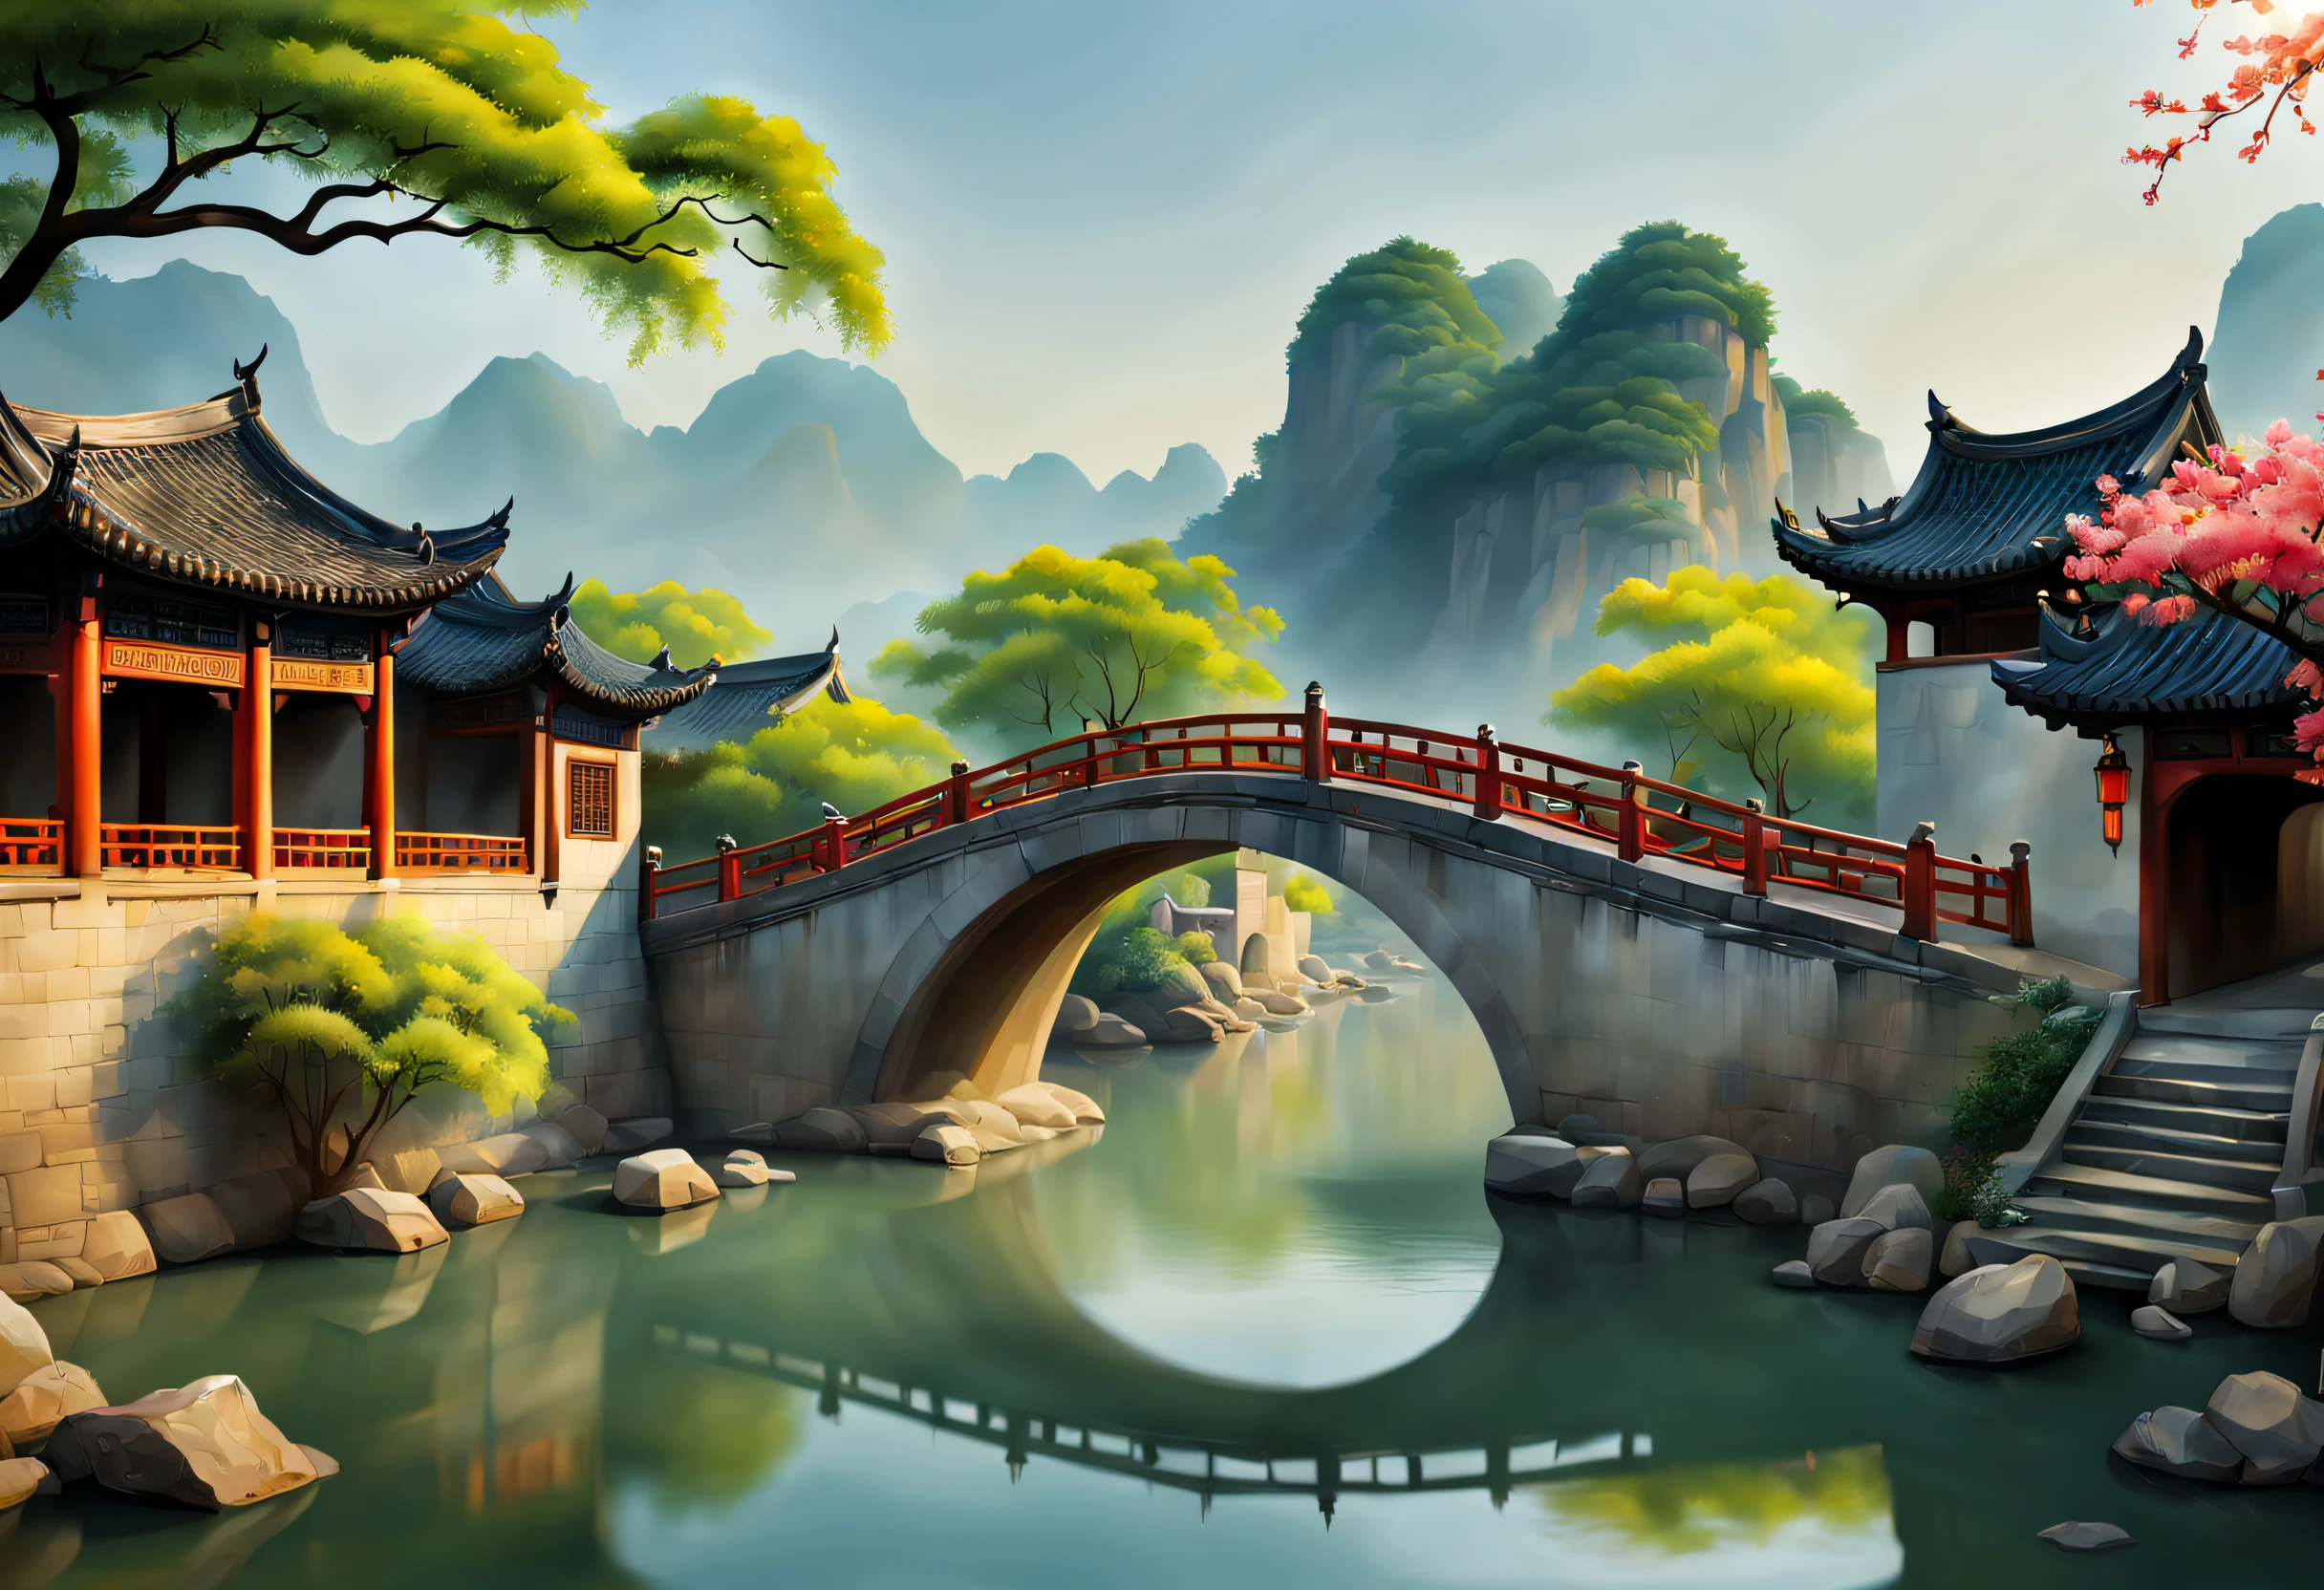 （vibrante con colores）, （semi-realista）, Vibrante paisaje ribereño en la antigua China, (Tranquil river water)Mostrar en el(Puente de arco elegante)Olvido, (aldeanos locales)&#39;s(Residencia pintoresca), （Representaciones de la dinastía Ming：1.1）, Ciudad antigua de Jiangnan, Pequeños puentes y agua corriente., Tierras de cultivo tranquilas a las afueras de la bulliciosa ciudad, （mañana soleada:1.2）, （pincelada fina：1.1）, Representación dinámica, Panorama of the water&#39;s edge, Ambiente auténtico, Autenticidad viva, encanto fascinante, fotos ricas, resolución 8K, 1.4x realism, arte deco, recuadro proyectado, sony fe gm, Gran angular, Súper detalle, mejor calidad, Una alta resolución